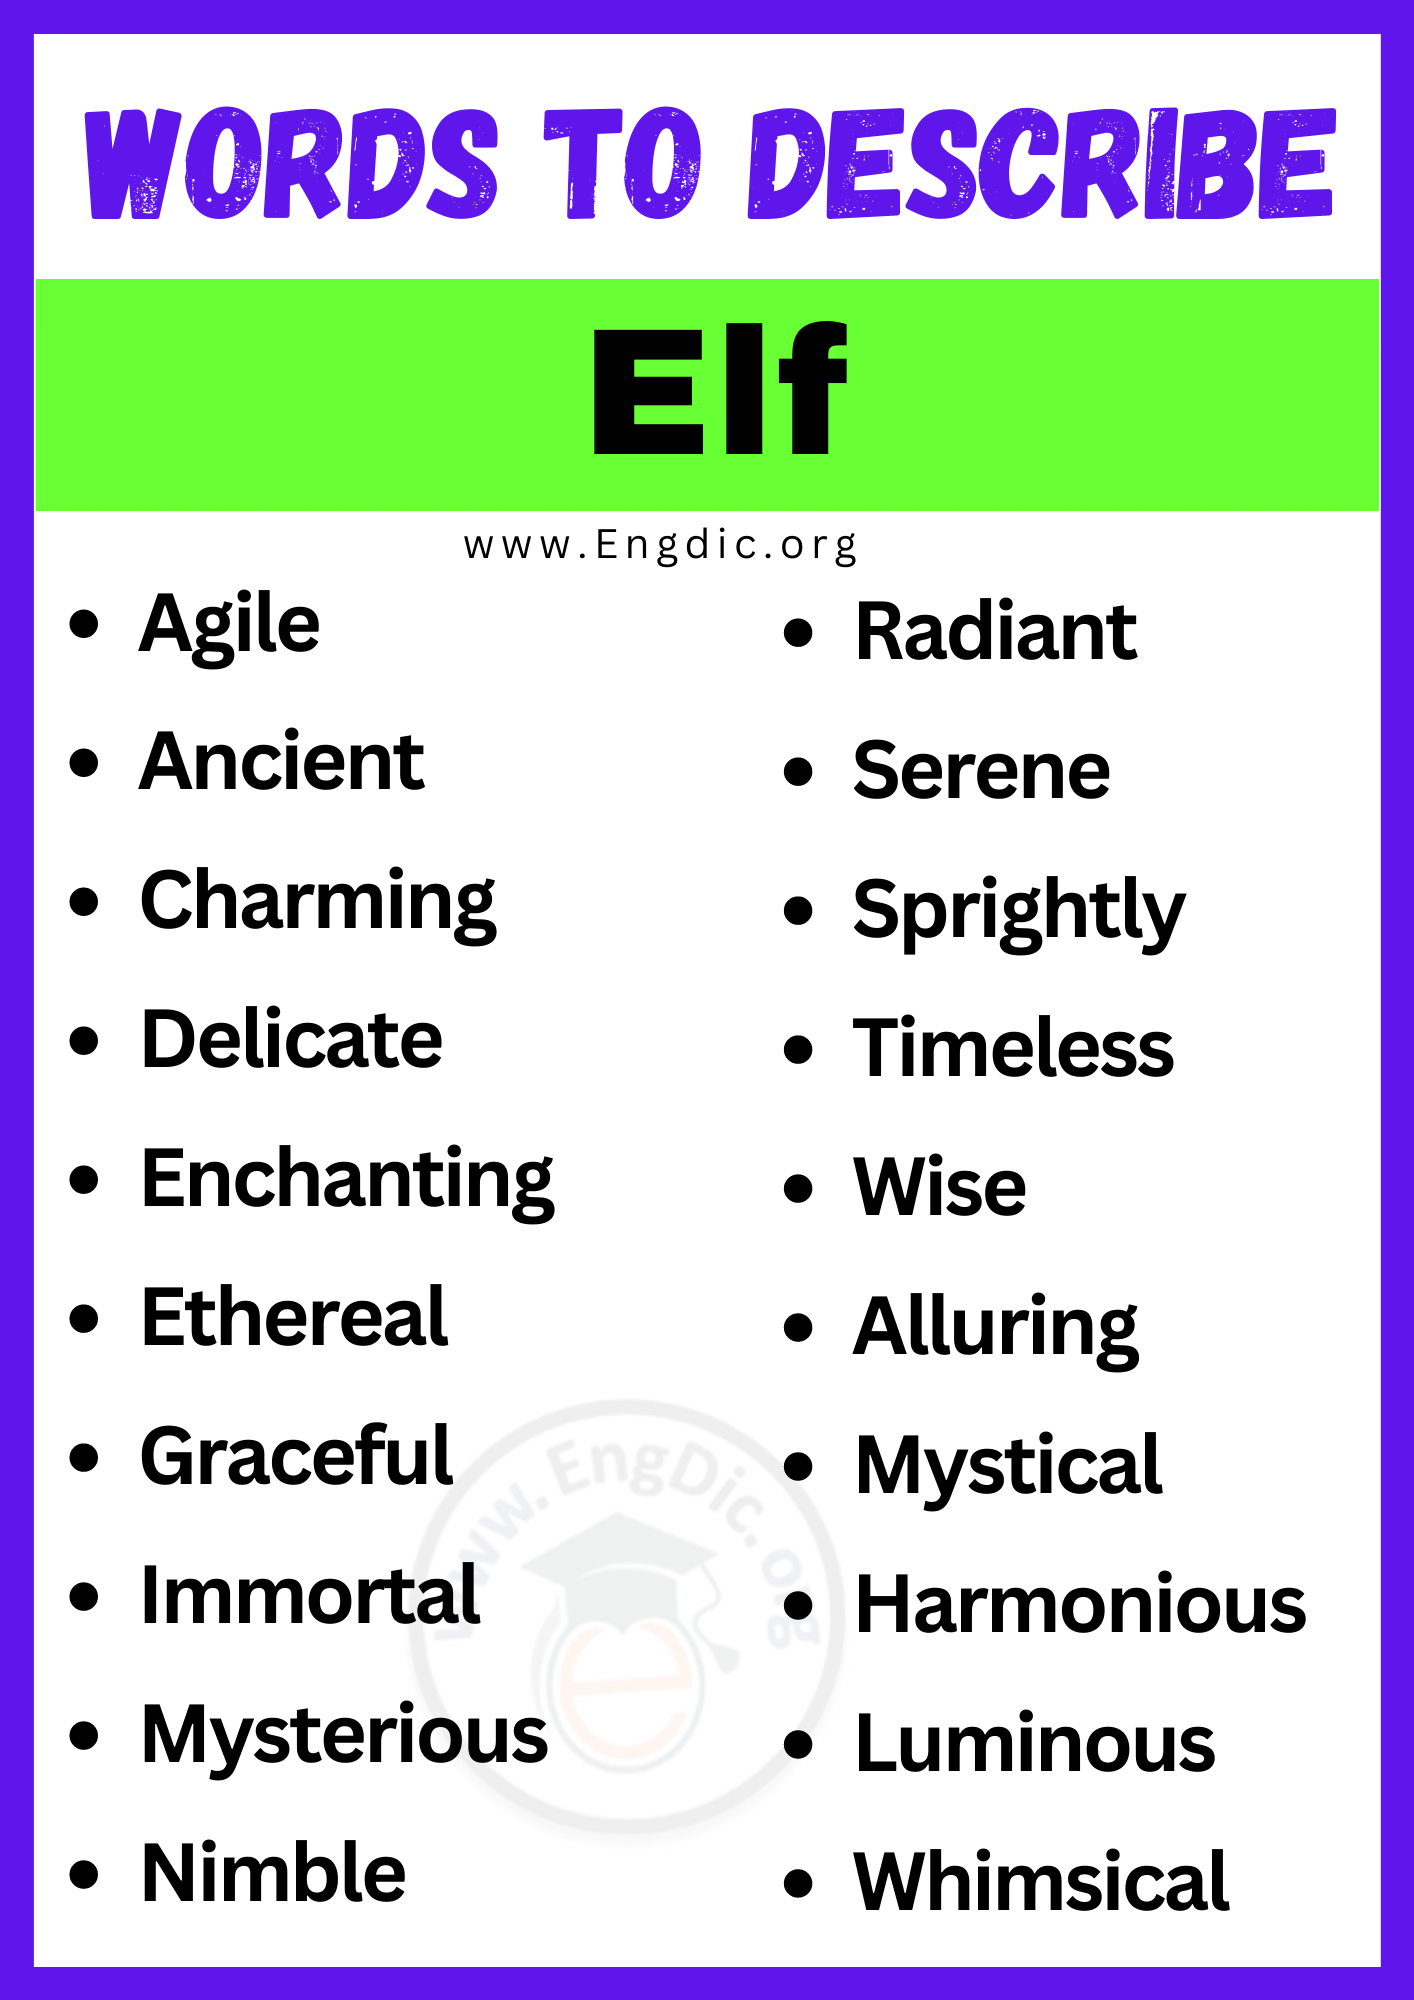 Words to Describe Elf